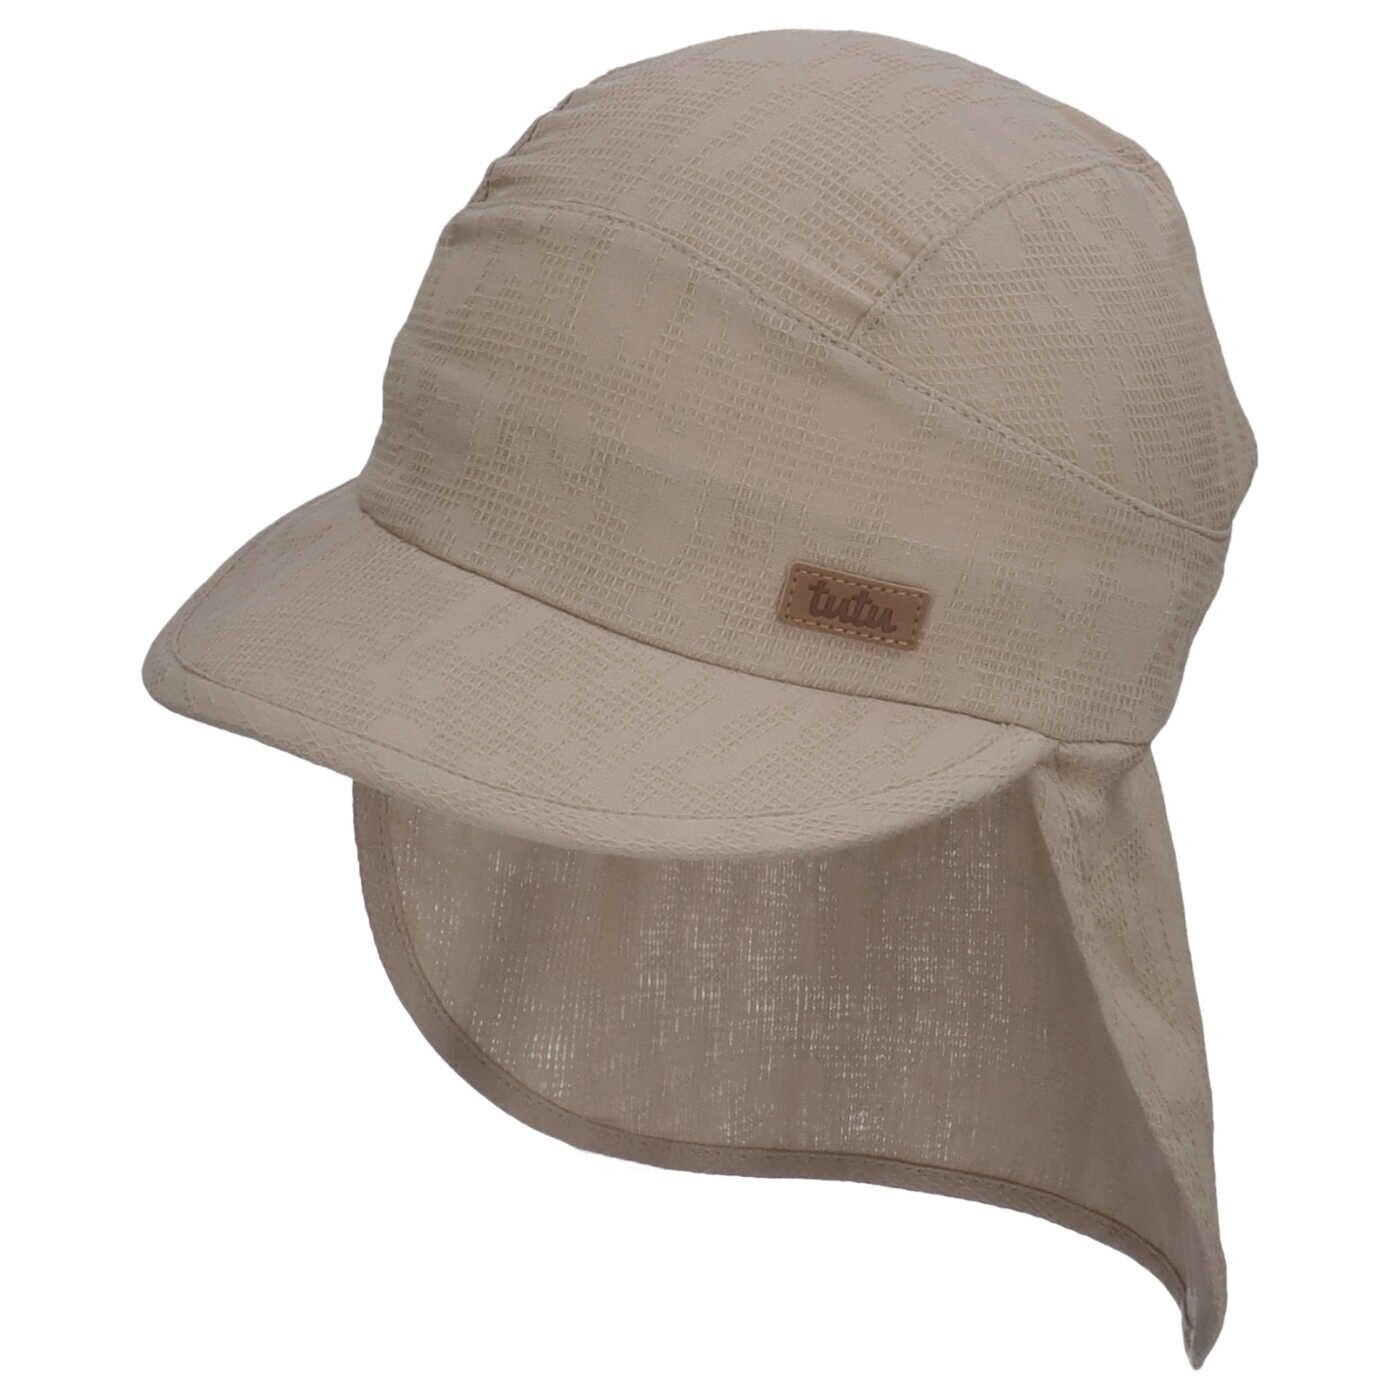 TuTu kepurė su kaklo apsauga